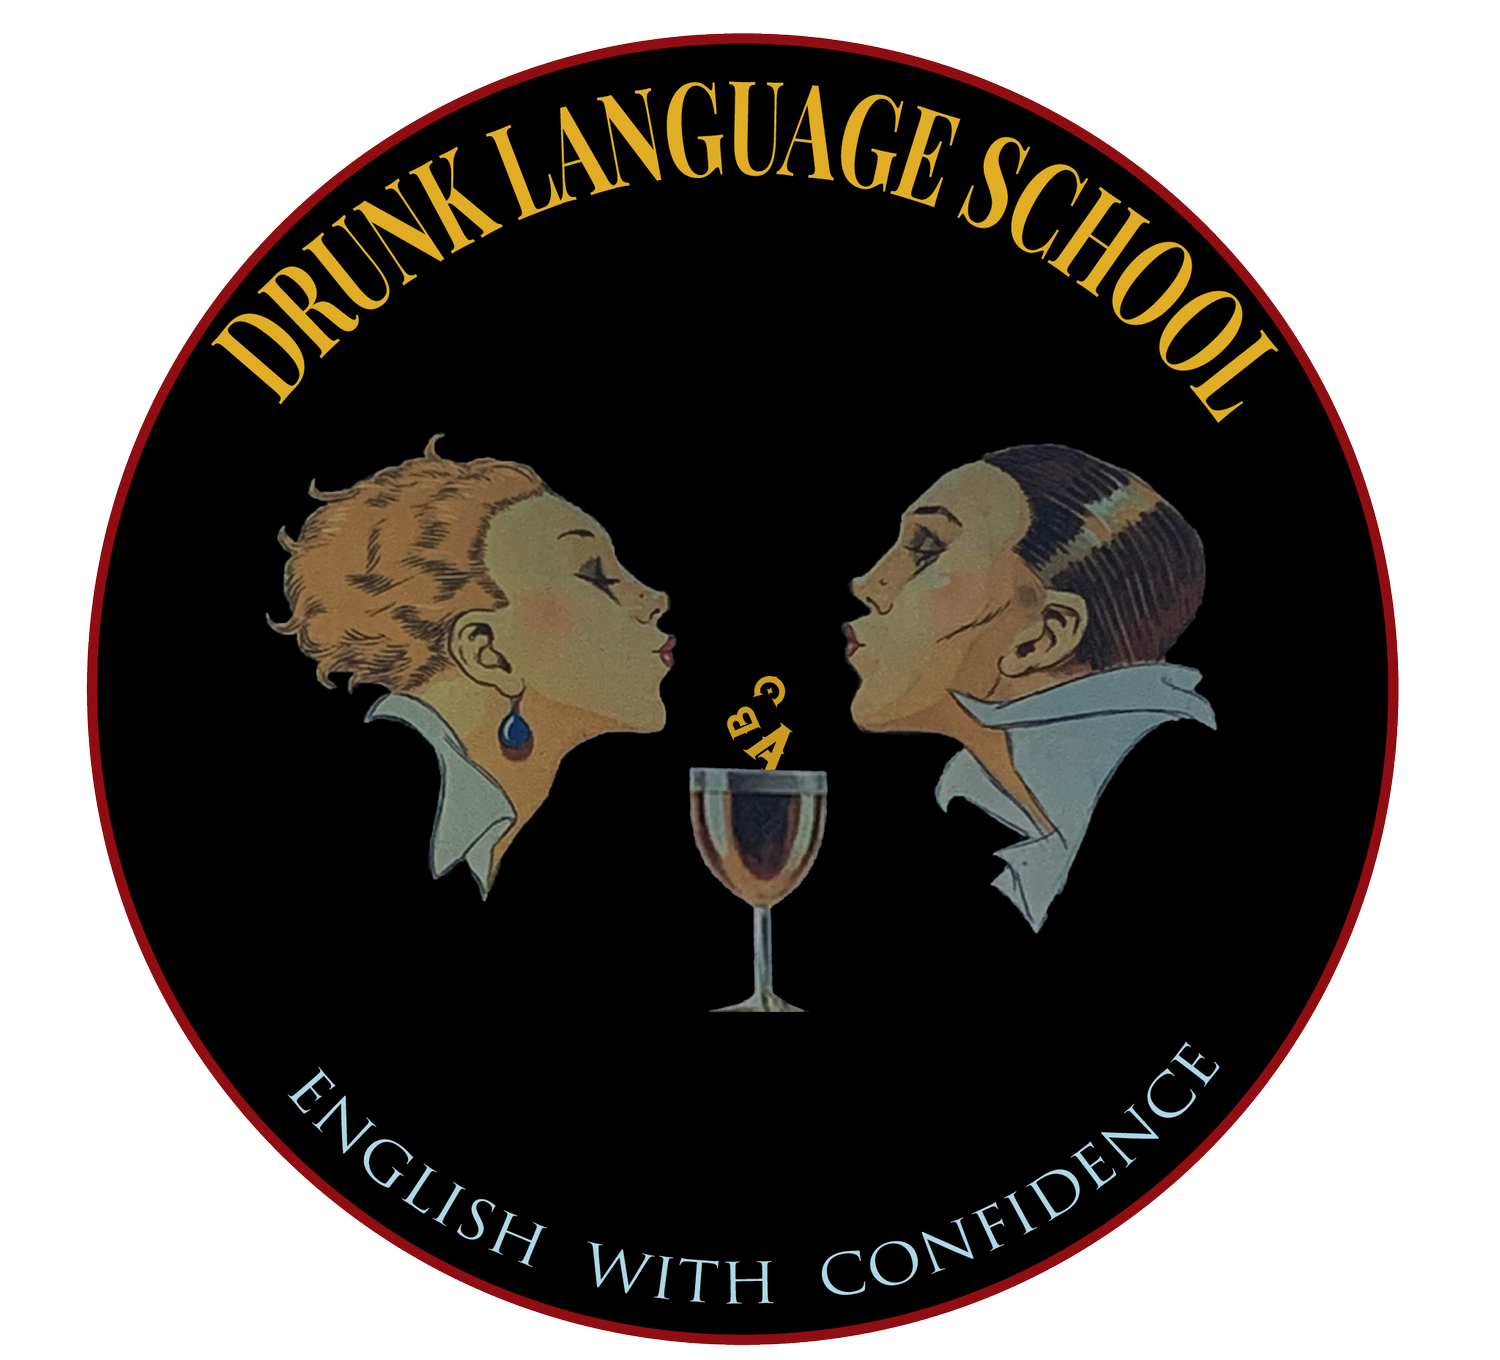 DRUNK LANGUAGE SCHOOL